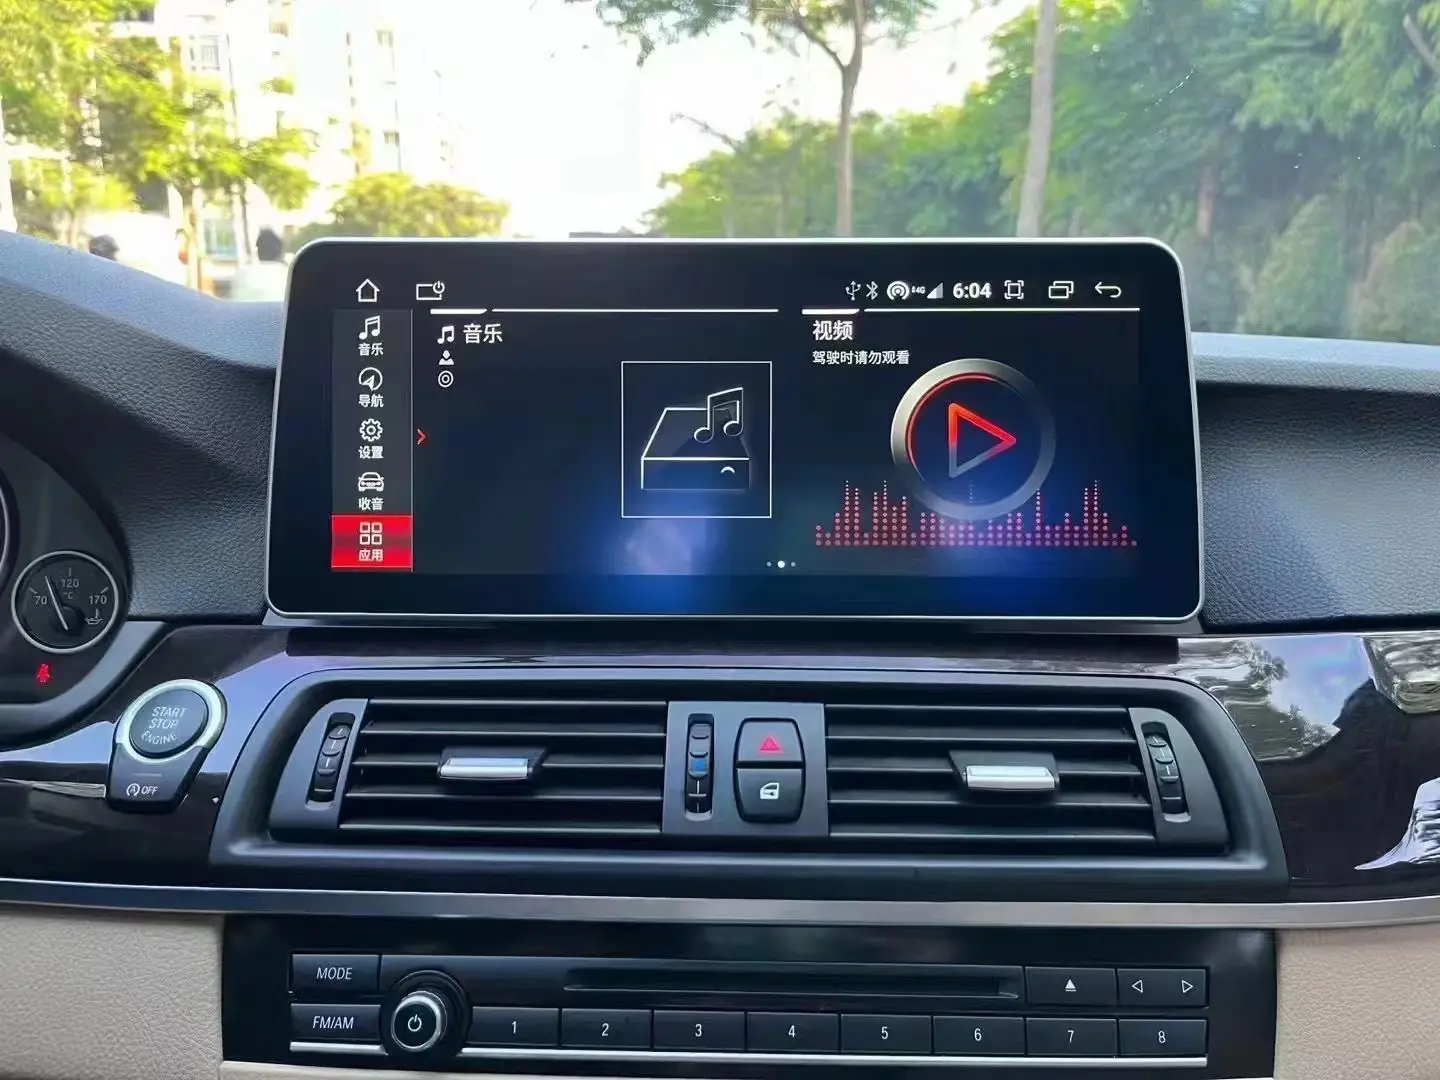 12.3 polegada dvd rádio do carro estéreo android tela sensível ao toque multimídia player carplay navegação para bmw 5 série f10 f11